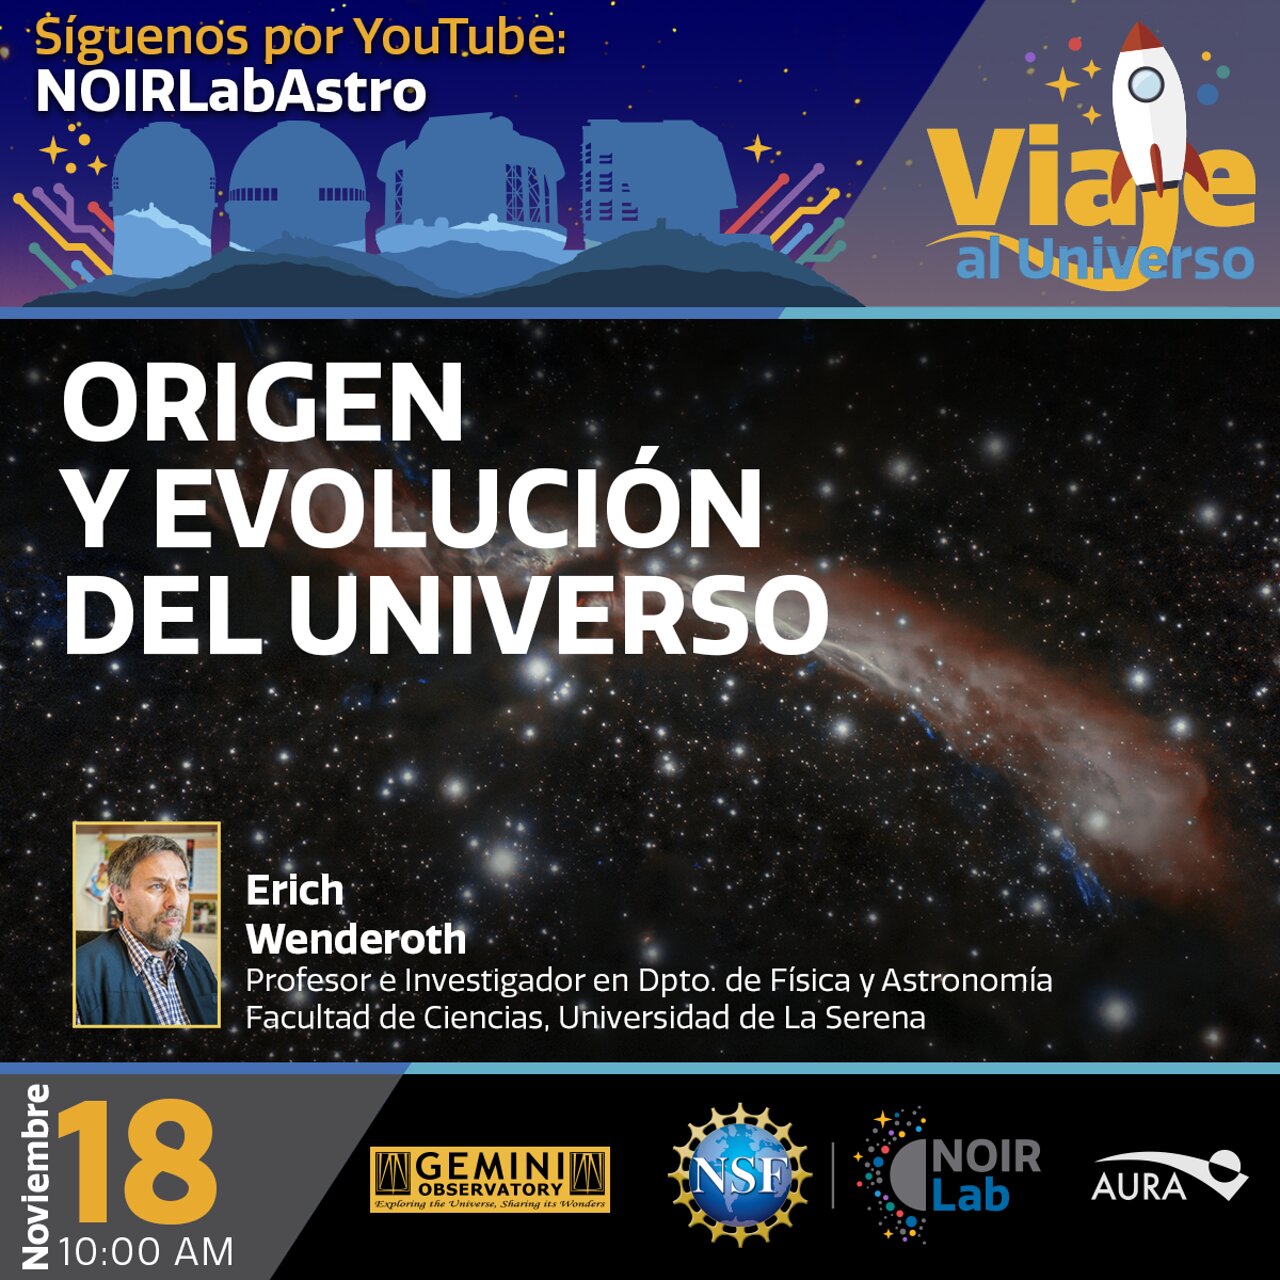 Electronic Poster: Viaje al Universo - "Origen y Evolución del Universo"